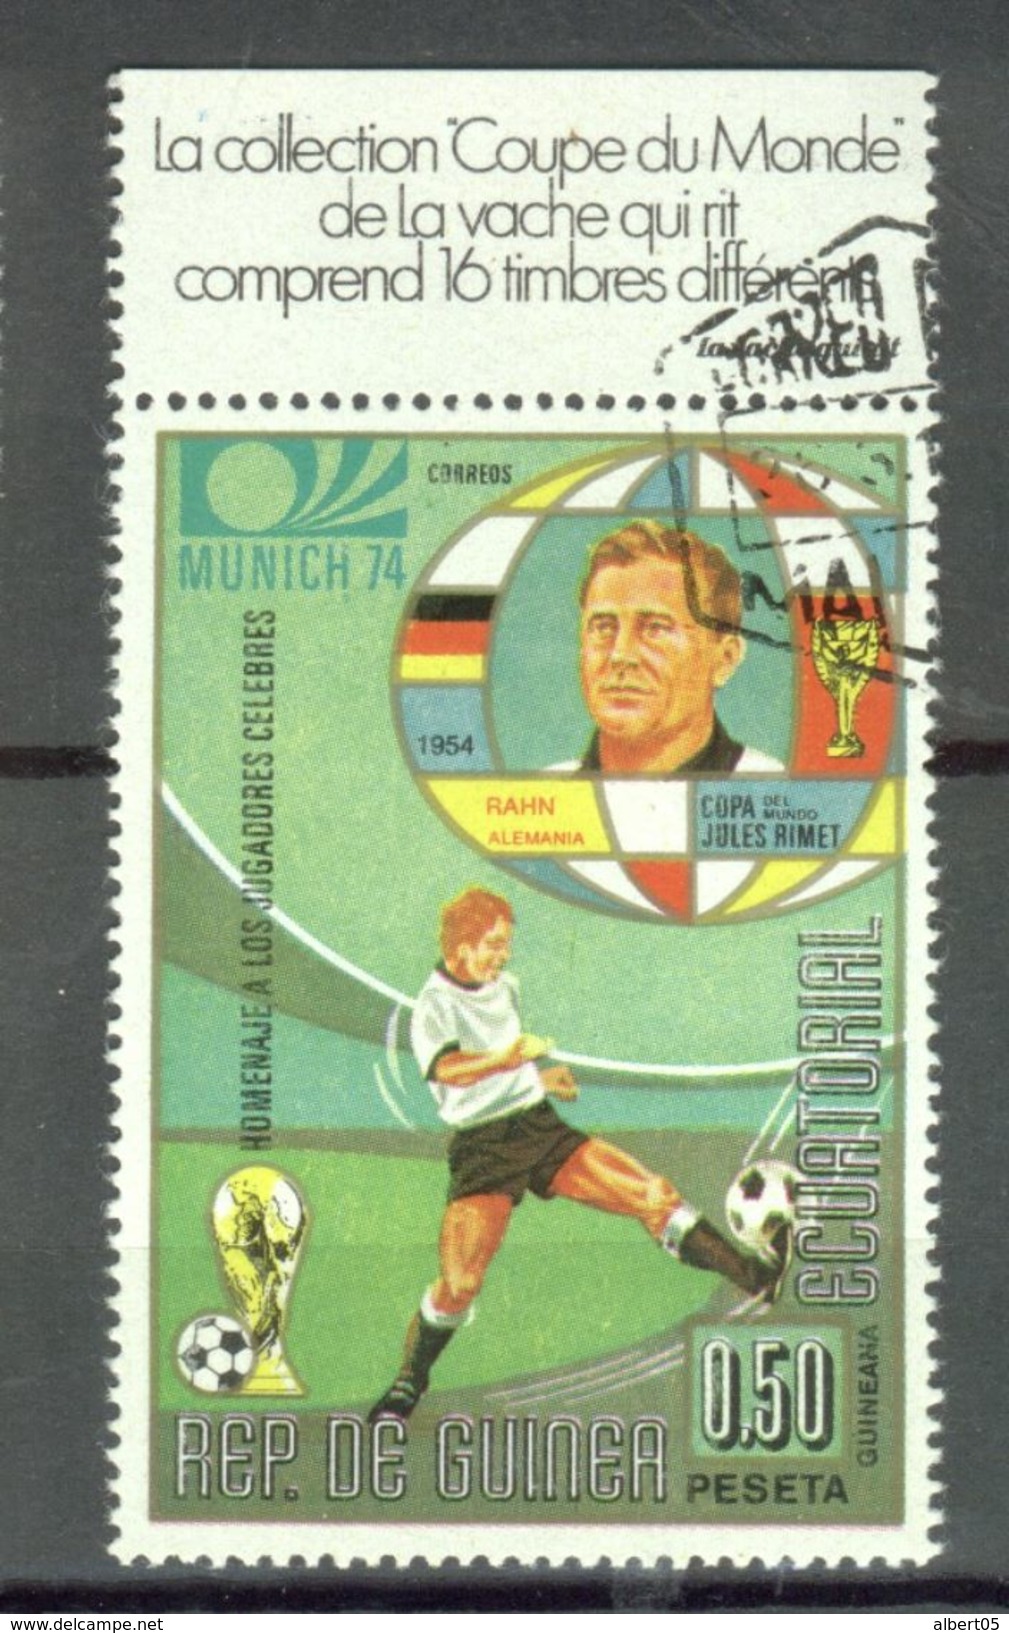 Vignette Vache Qui Rit Avec Timbre Guinée Equatoriale Coupe Du Monde Foot Ball - 0,50 Pesetas - 1974 – Allemagne Fédérale